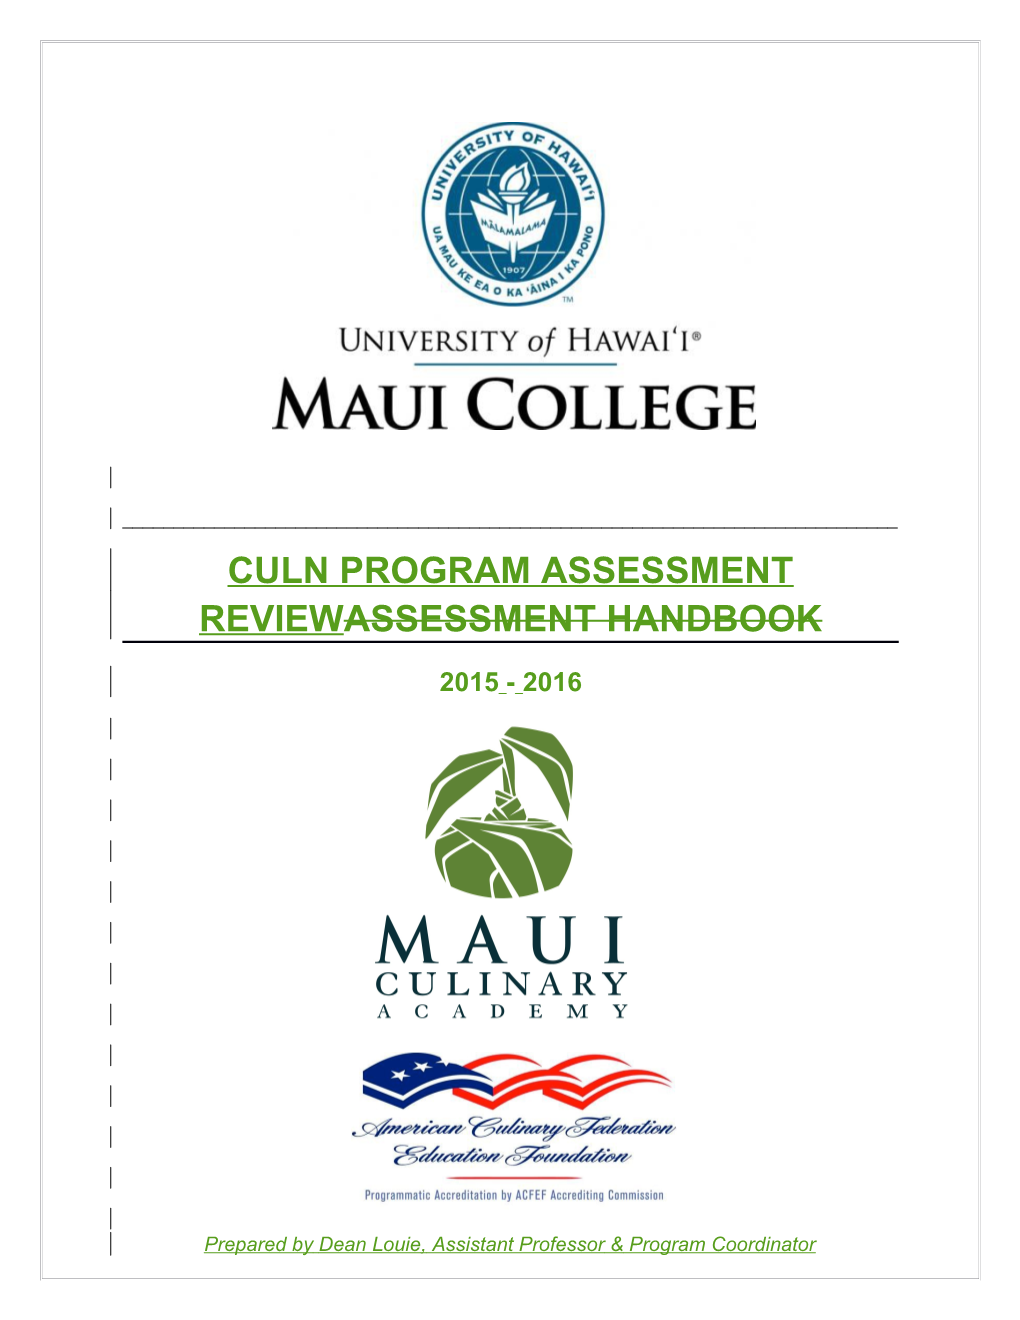 Culn Program Assessment Reviewassessment Handbook